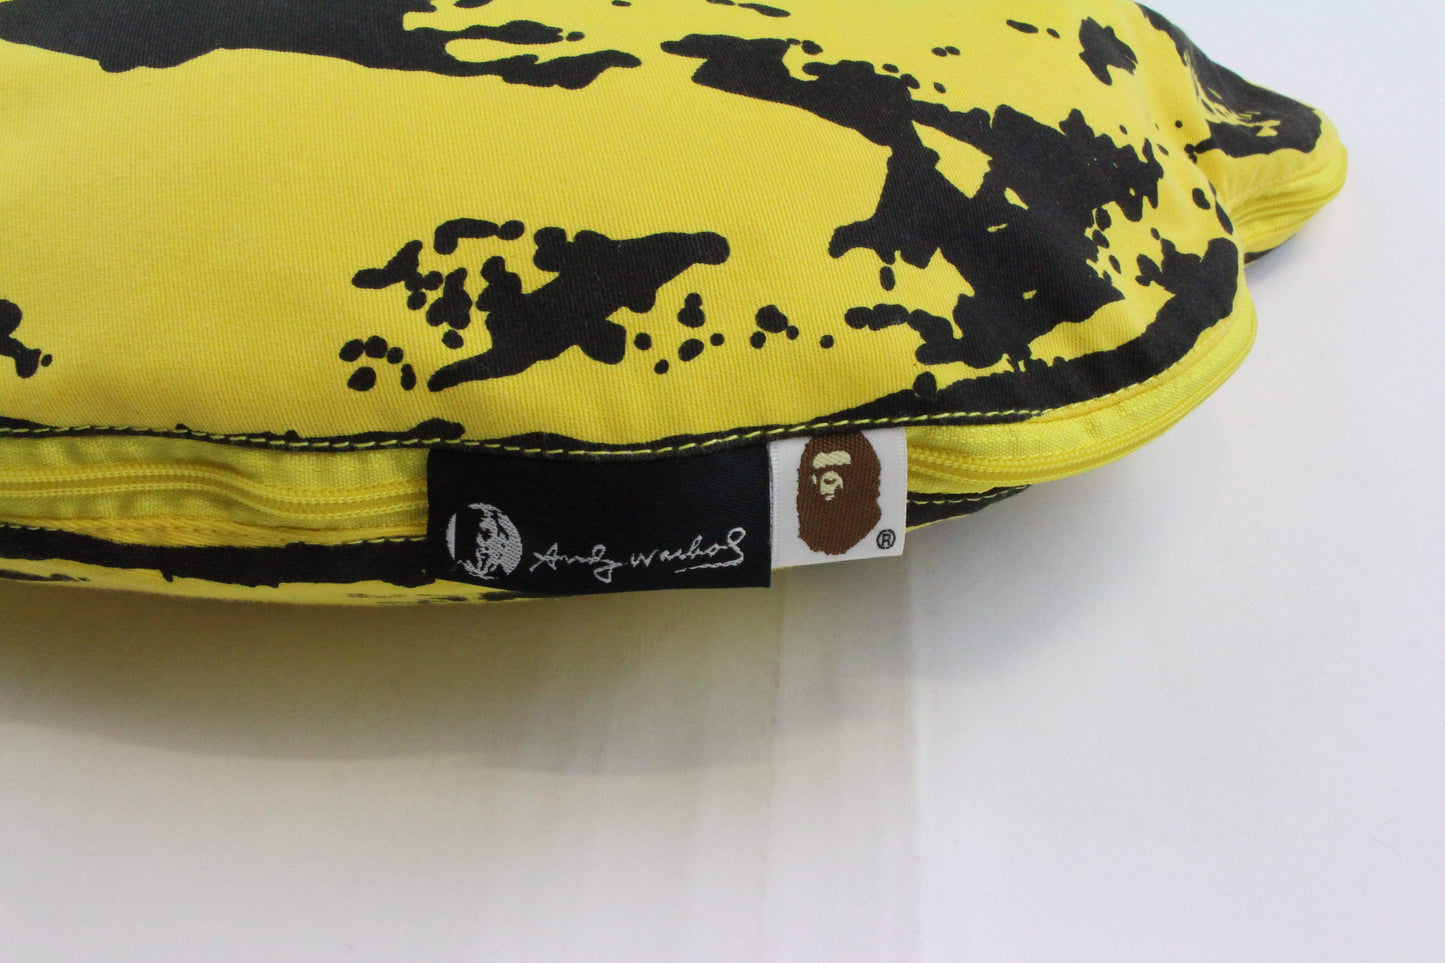 Bape x Andy Warhol Banana Cushion - SaruGeneral